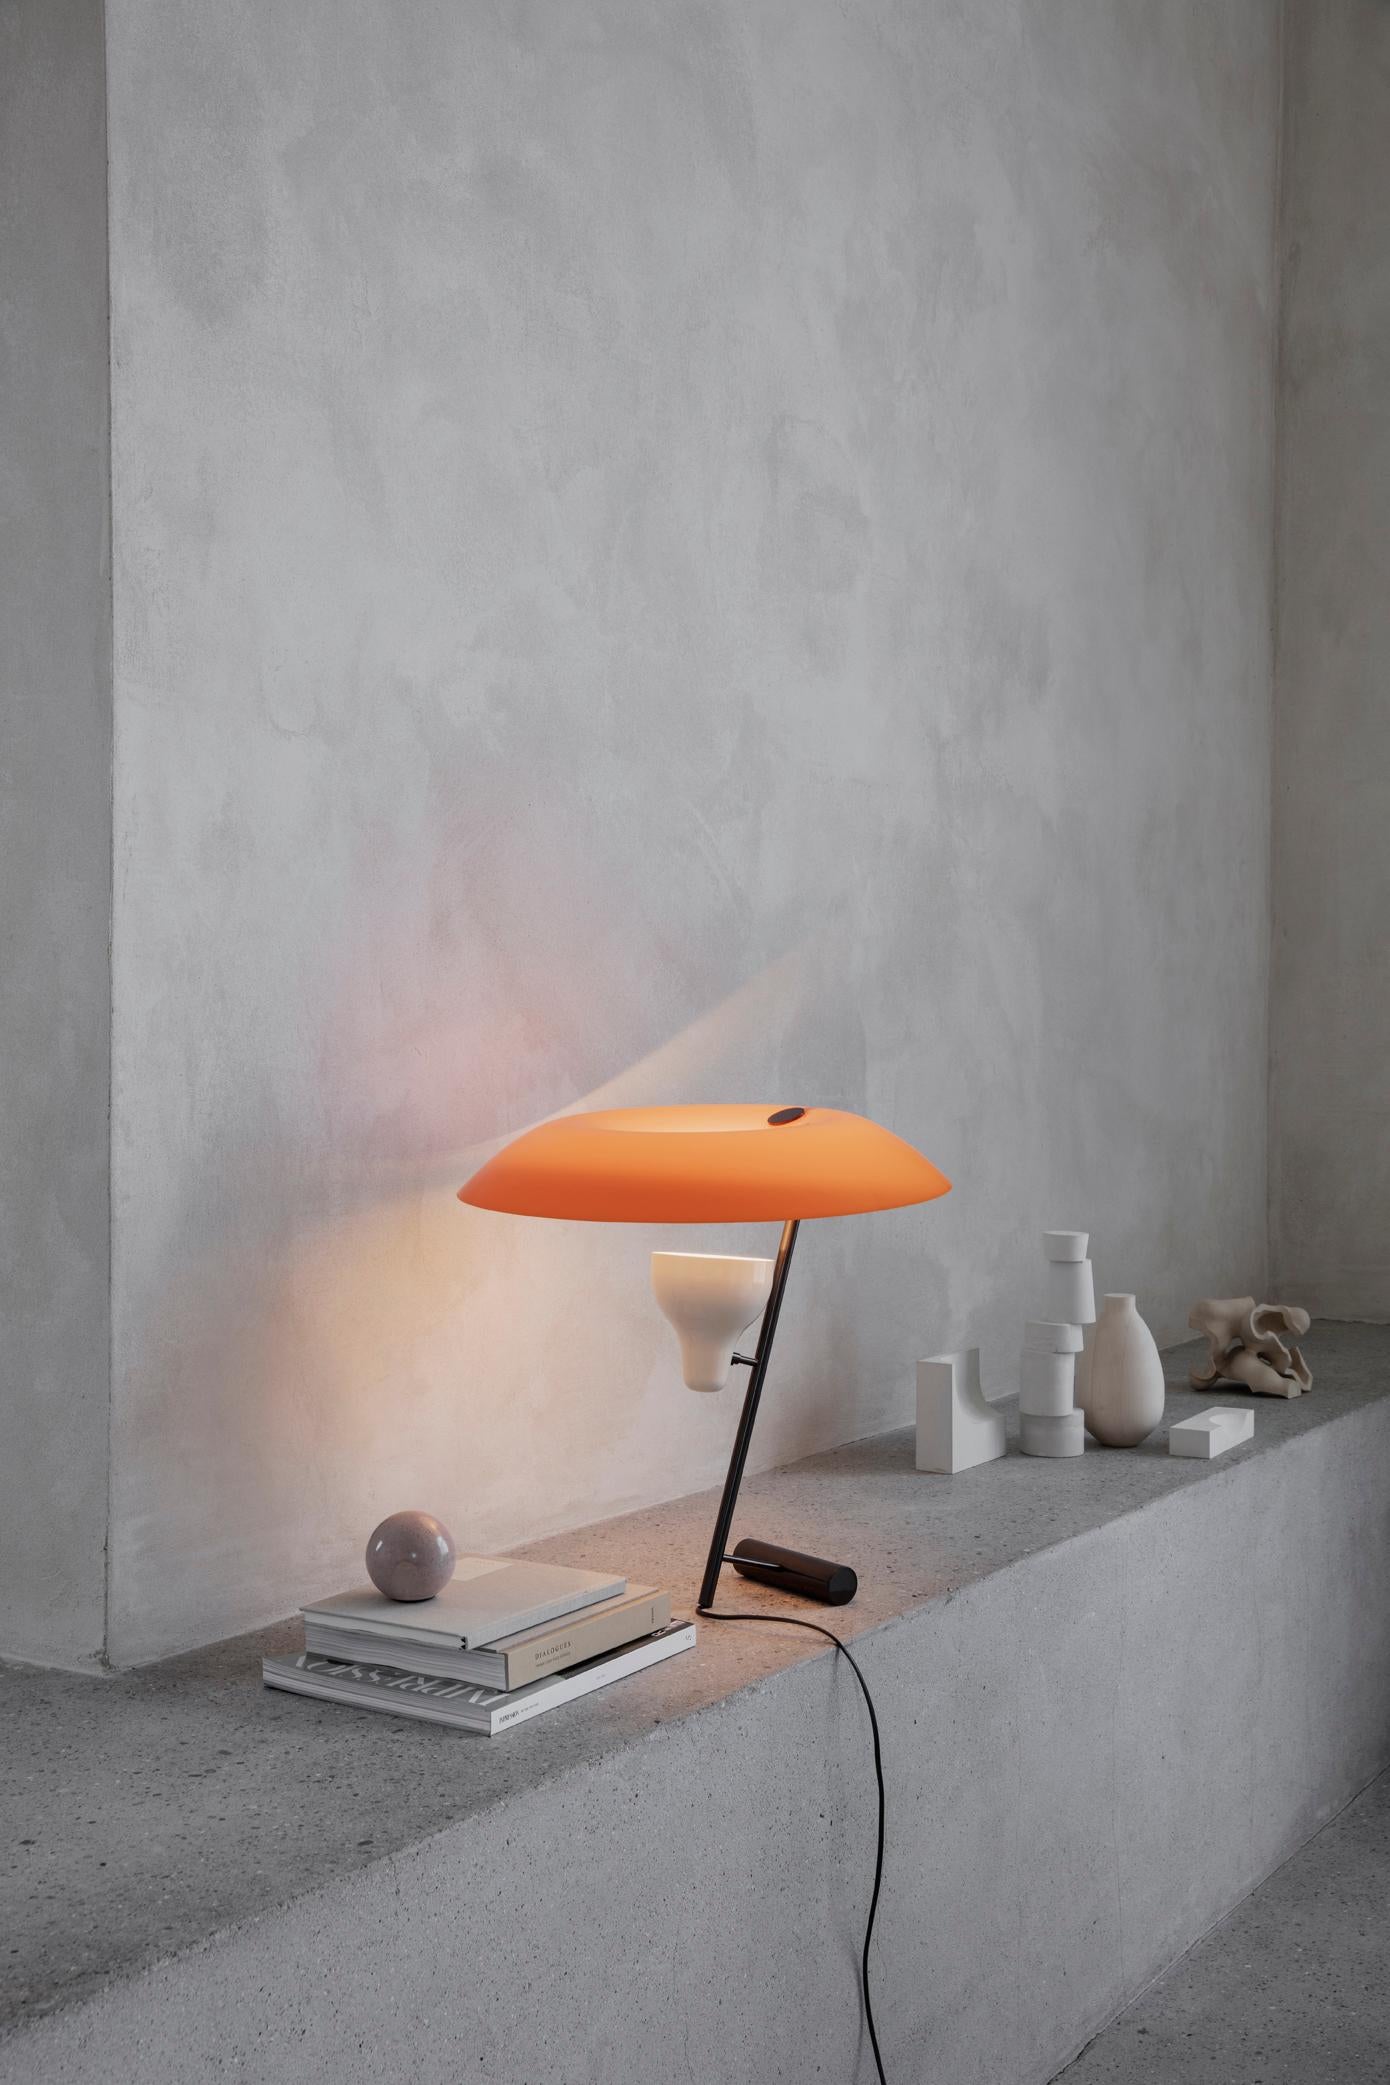 Modelo 548
Diseño de Gino Sarfatti
La lámpara de sobremesa diseñada en 1951 es un estudio sobre el equilibrio y el reflejo de la luz a través de una pantalla, un tema recurrente en la obra de Gino Sarfatti. El modelo 548 proporciona tanto luz